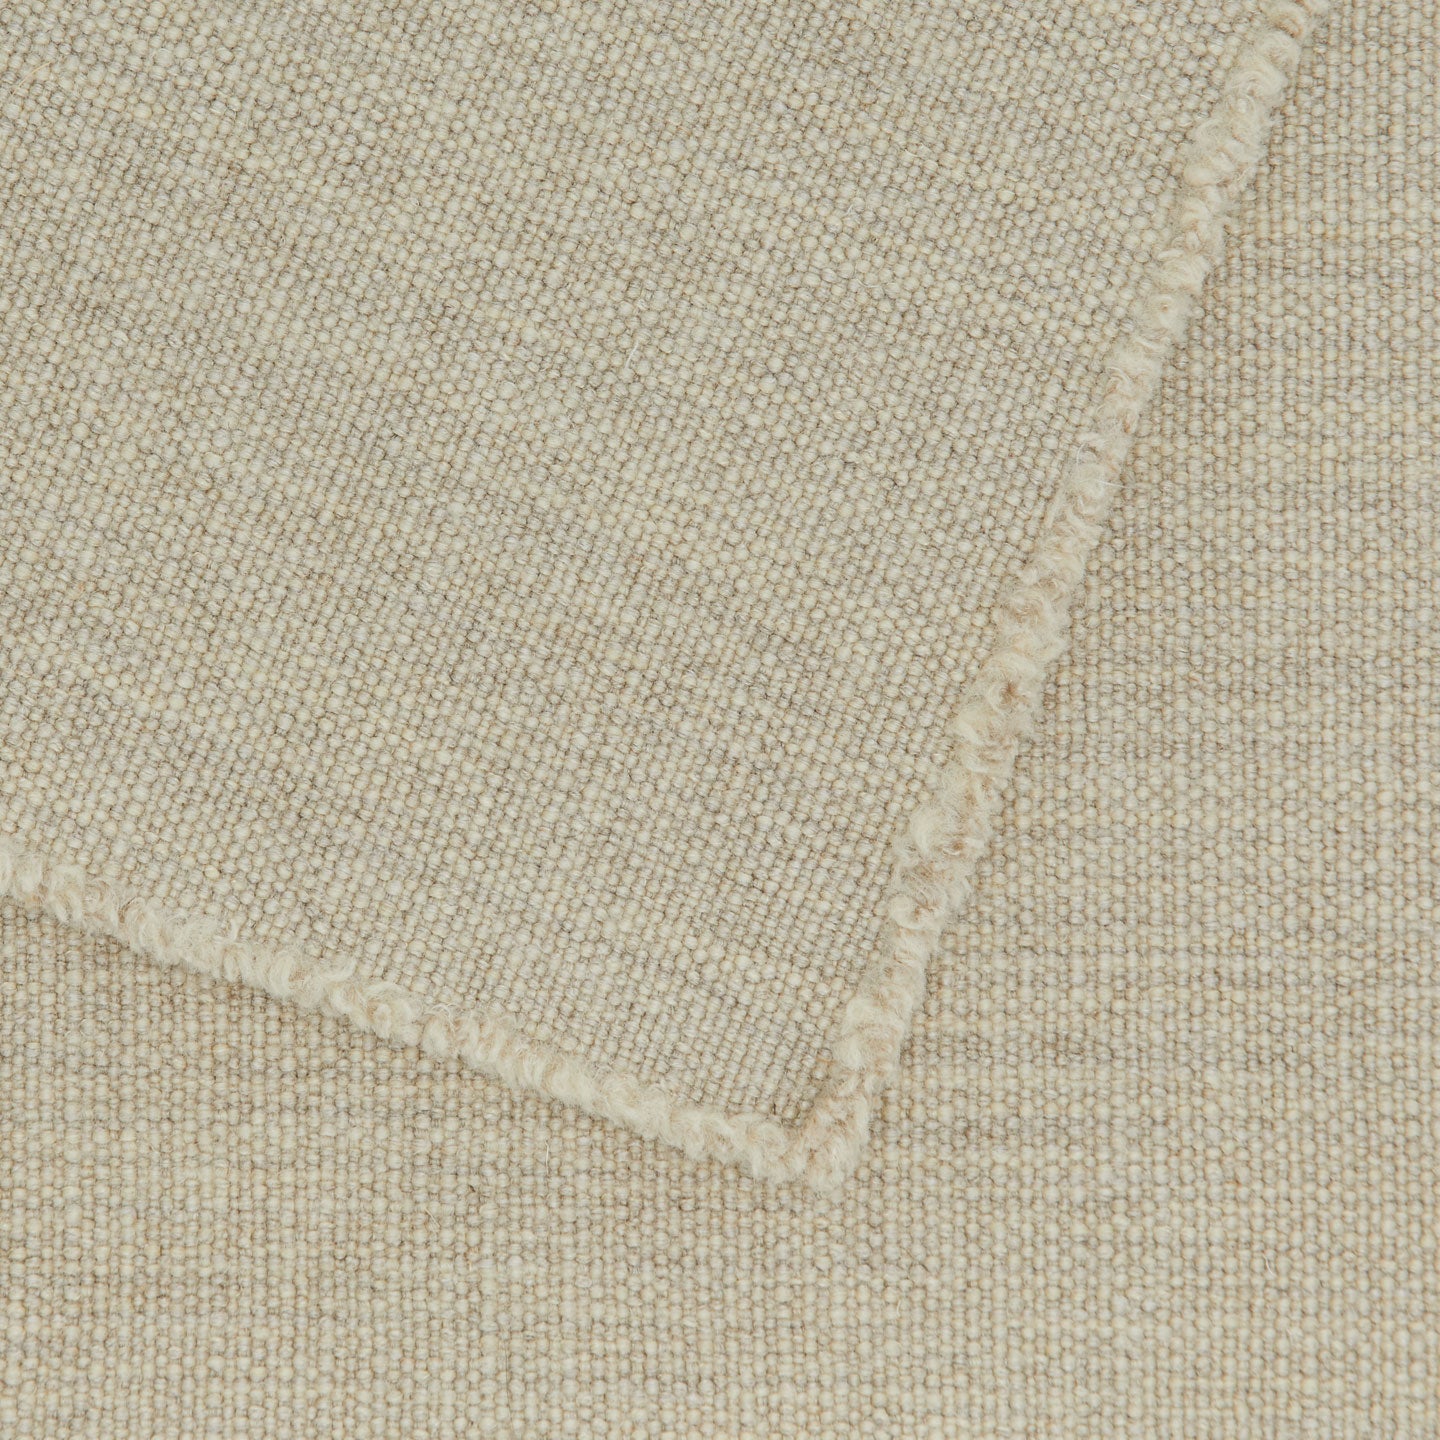 Jasper Placemat, Set of 2 - Natural Linen Wool